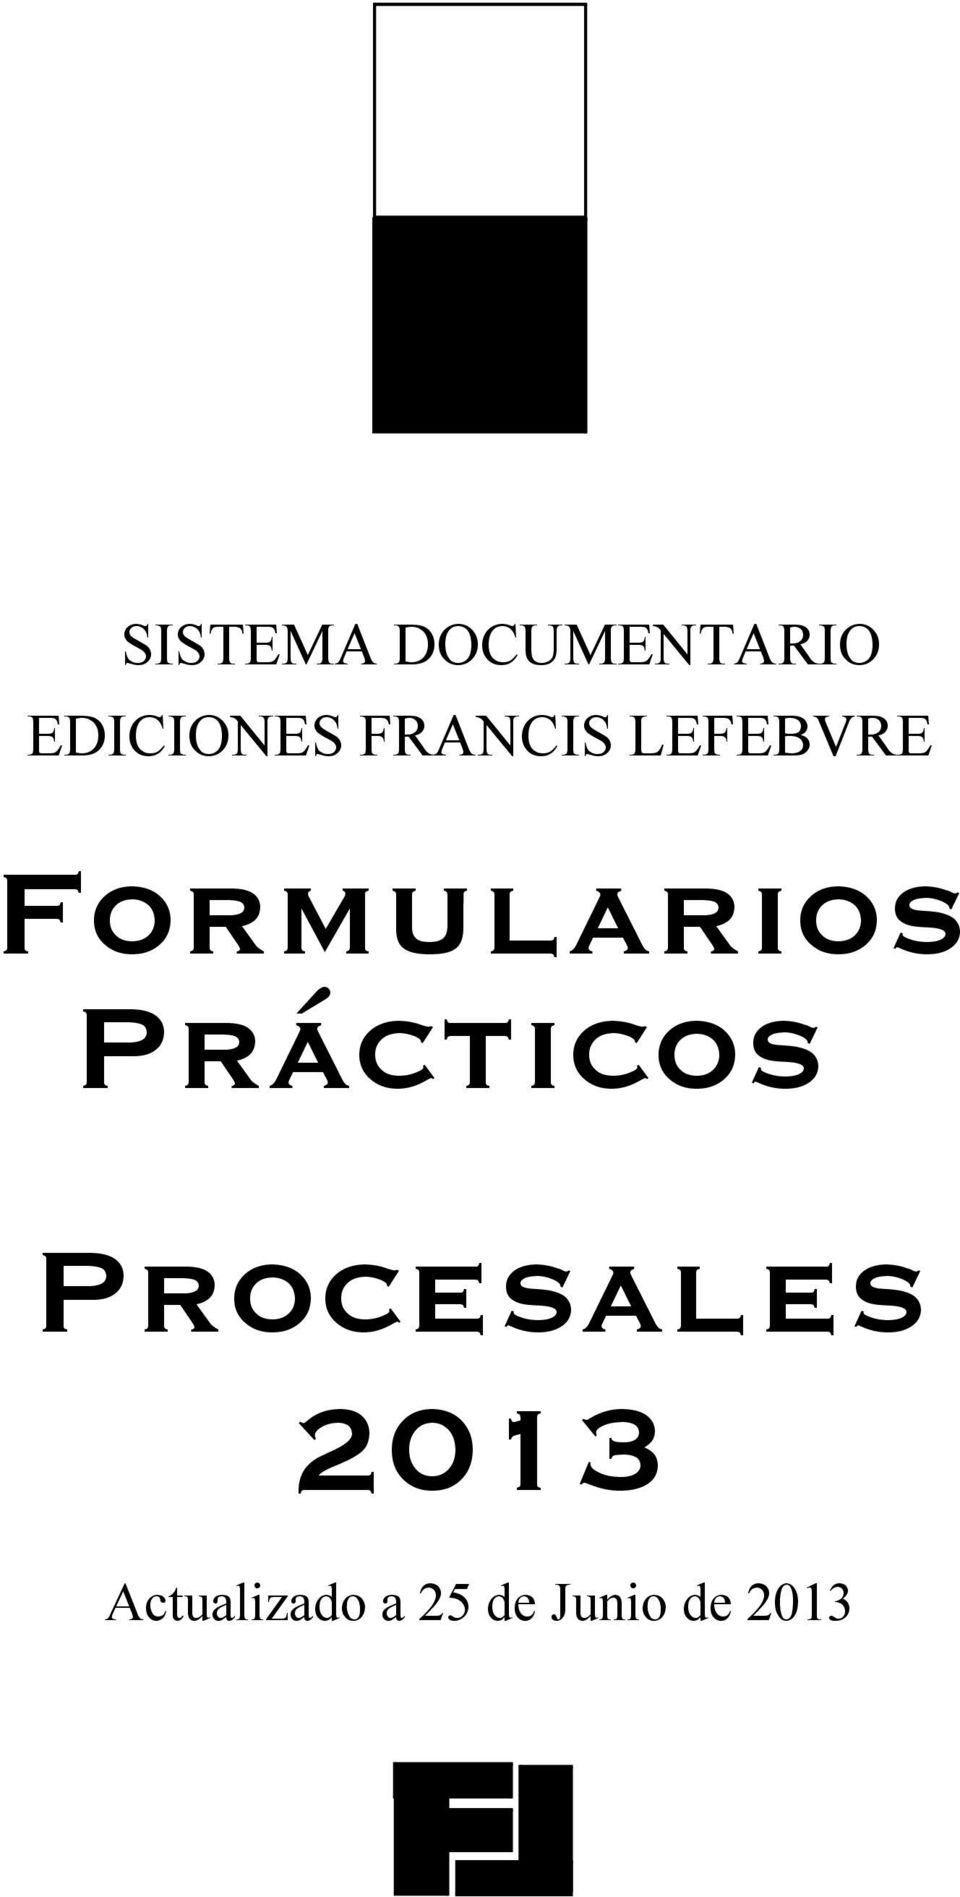 Prácticos Procesales 2013